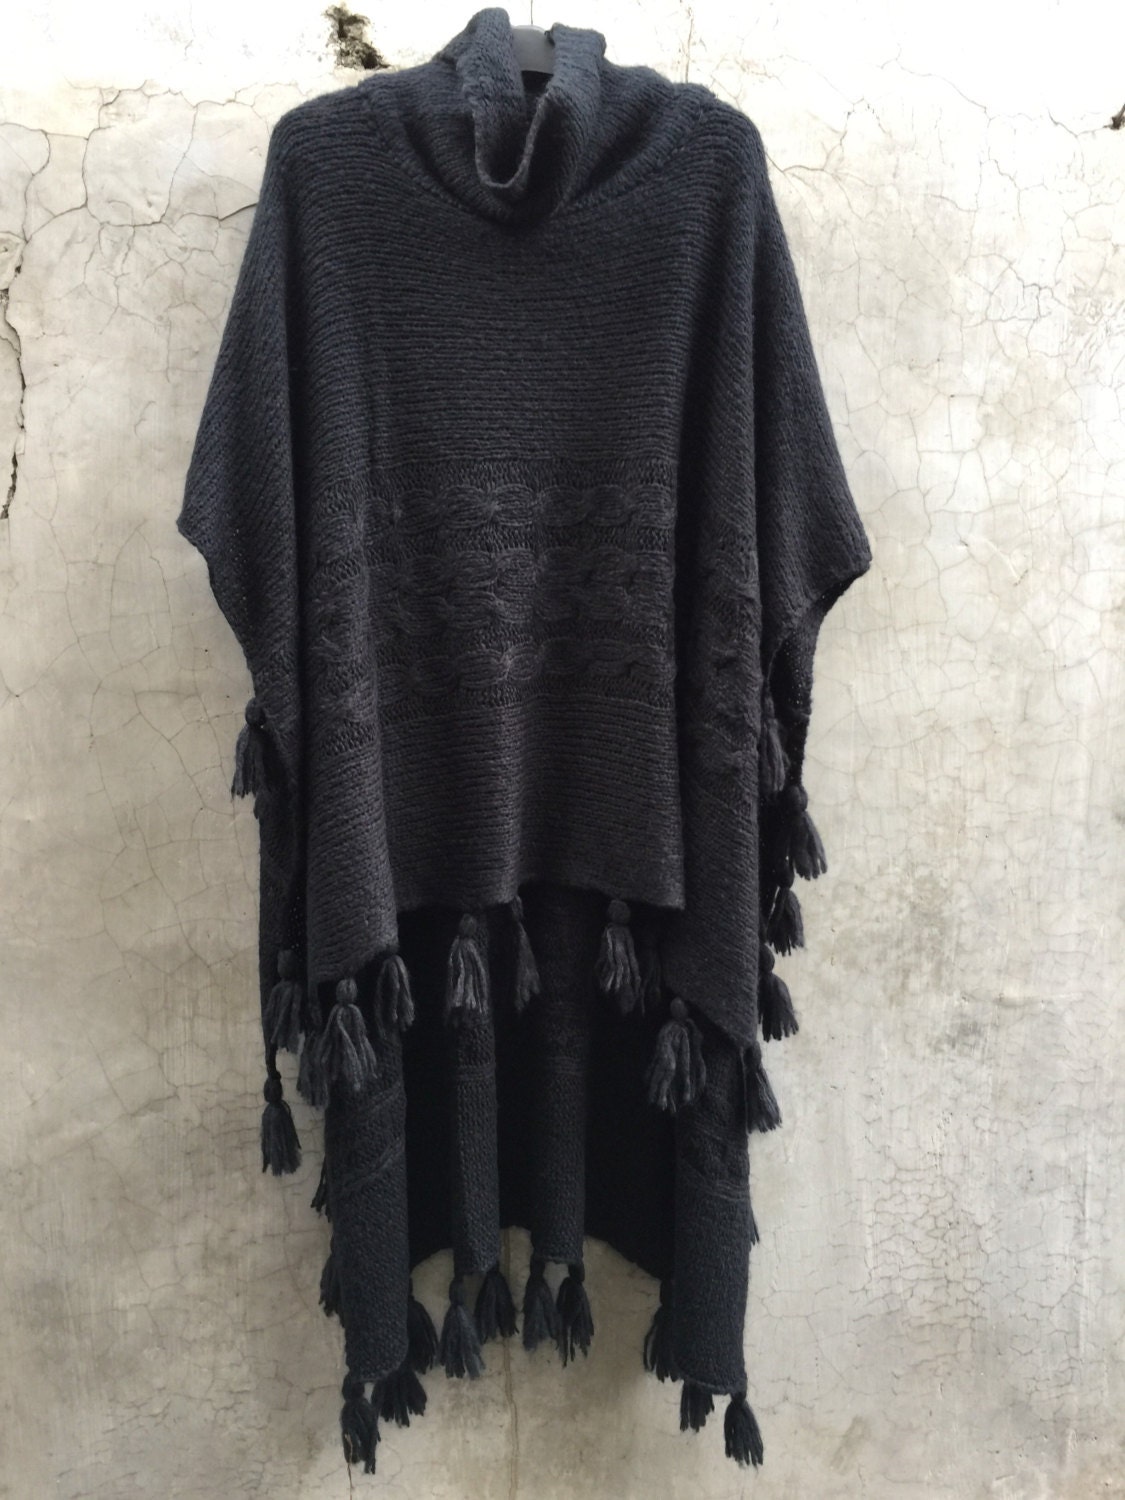 Swl01/sweater Long Tassel Cape - Etsy